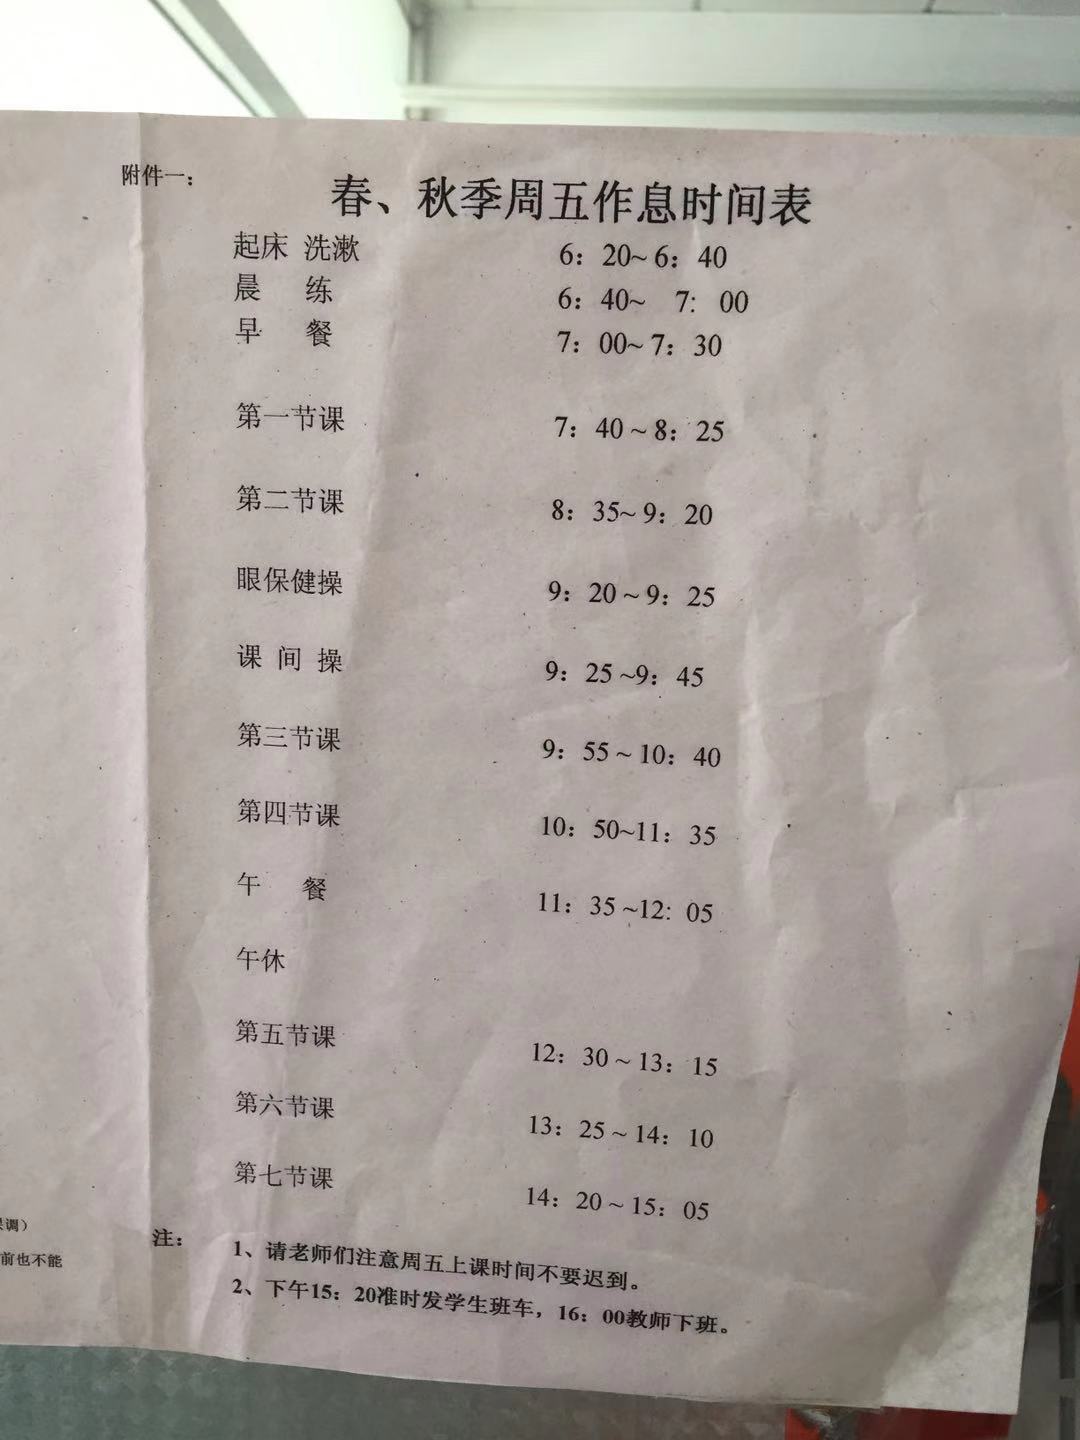 师达中学作息时间表